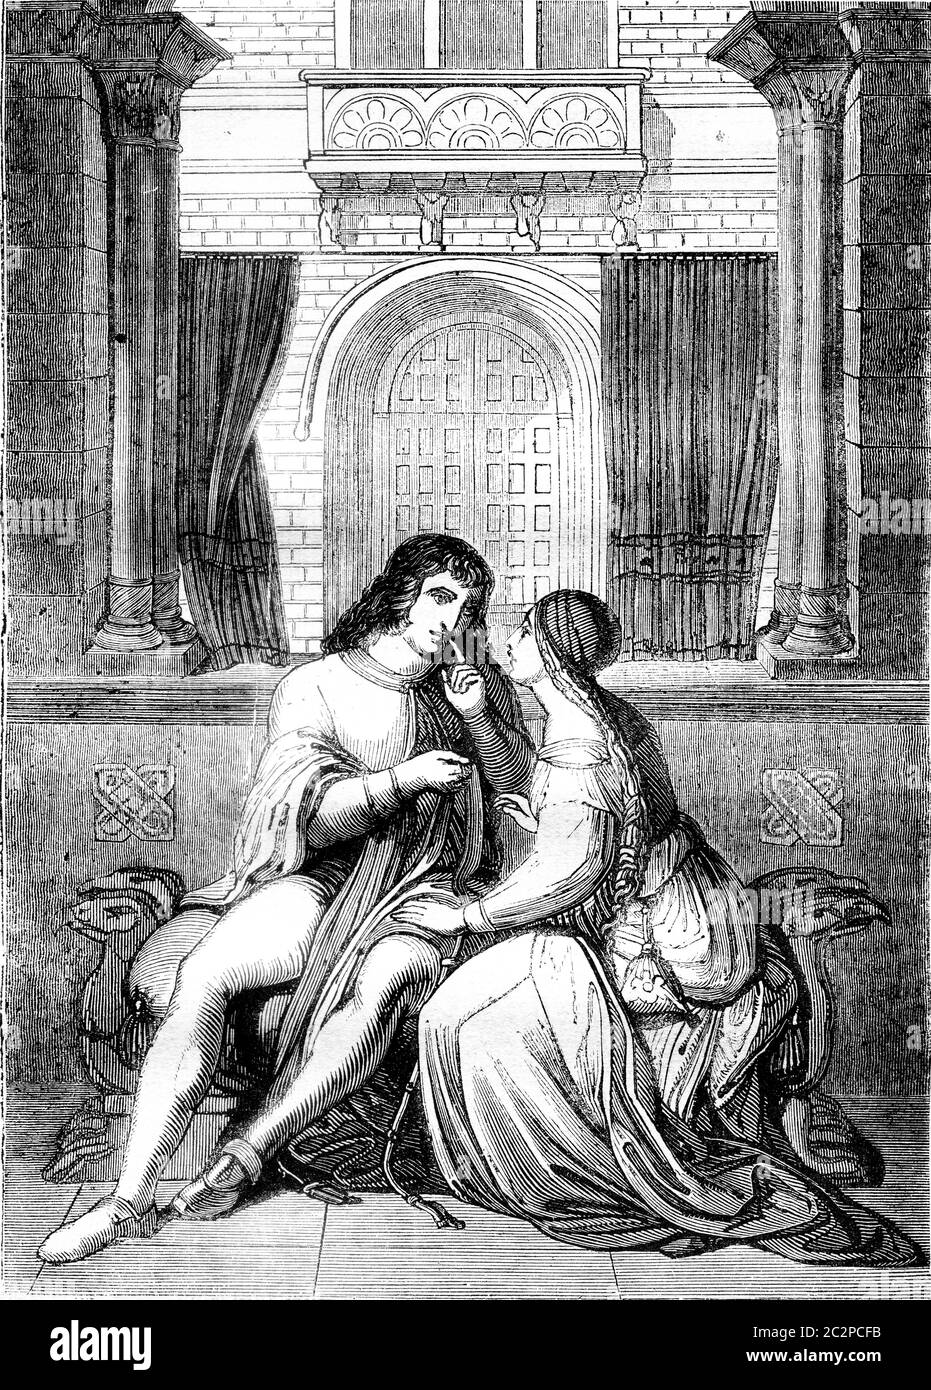 Eine Szene der nibelungen, Vintage gravierte Illustration. Magasin Pittoresque 1841. Stockfoto